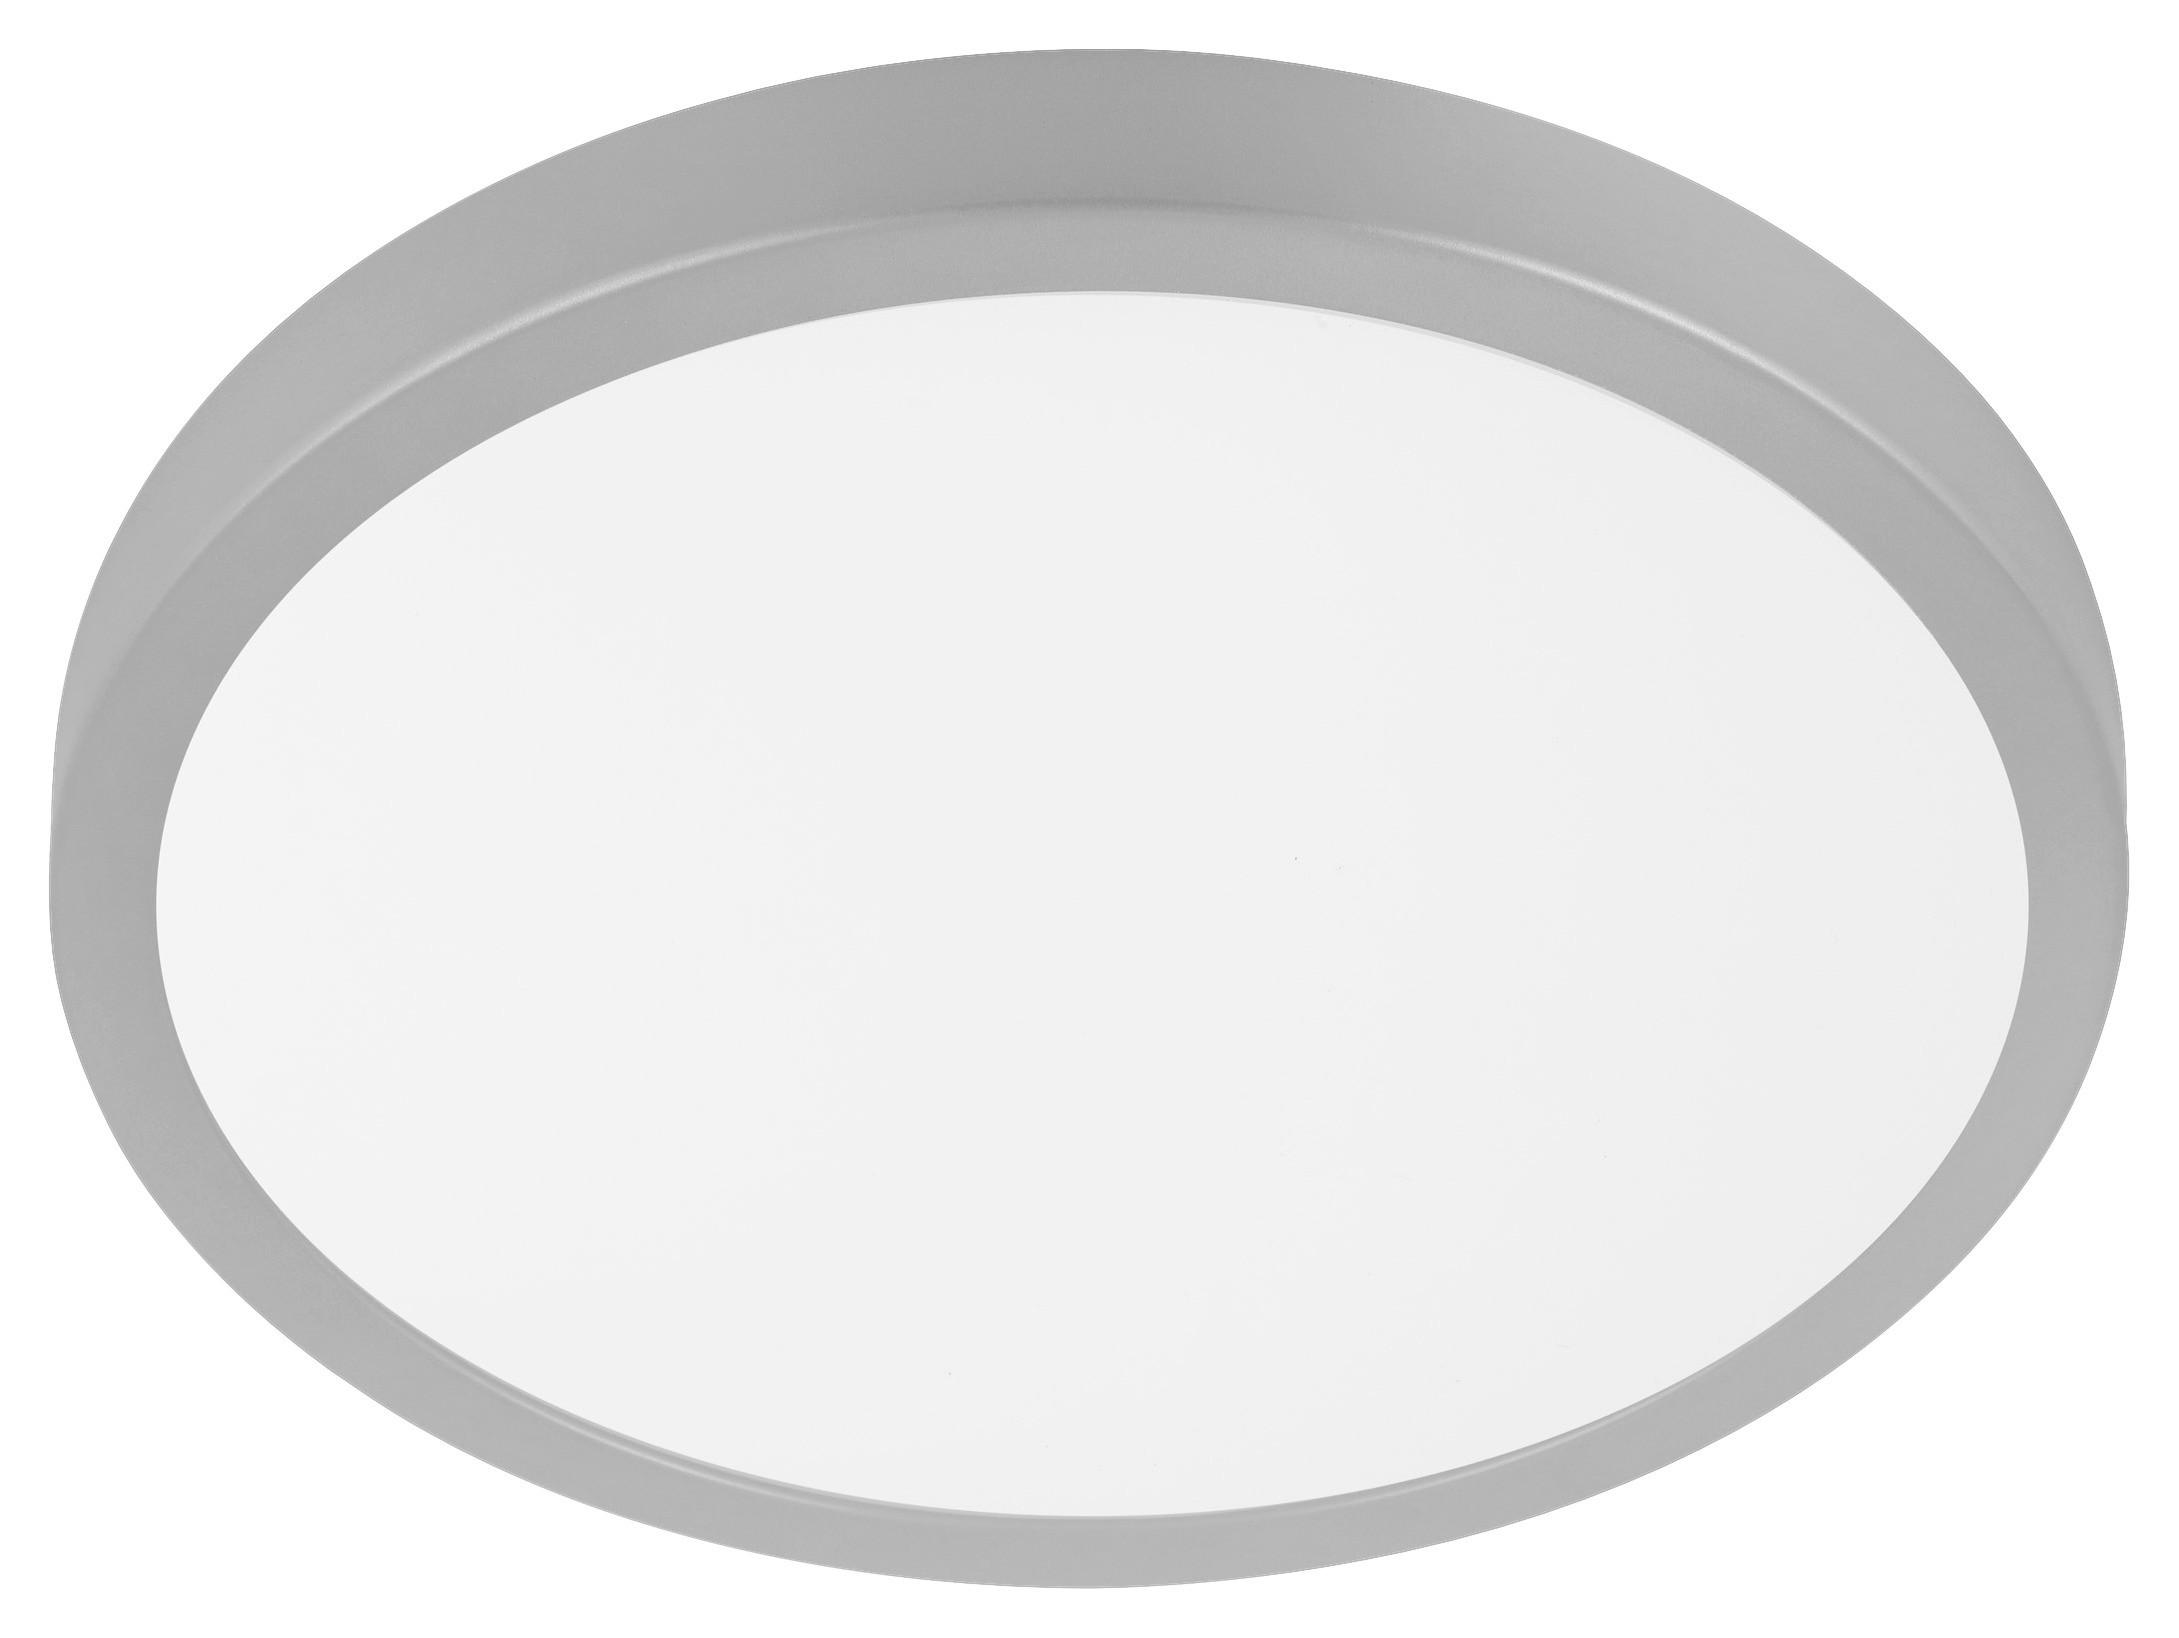 LED-Deckenleuchte Molay Ø 28,5 cm - Silberfarben/Weiß, Basics, Kunststoff/Metall (28,5/2,8cm)